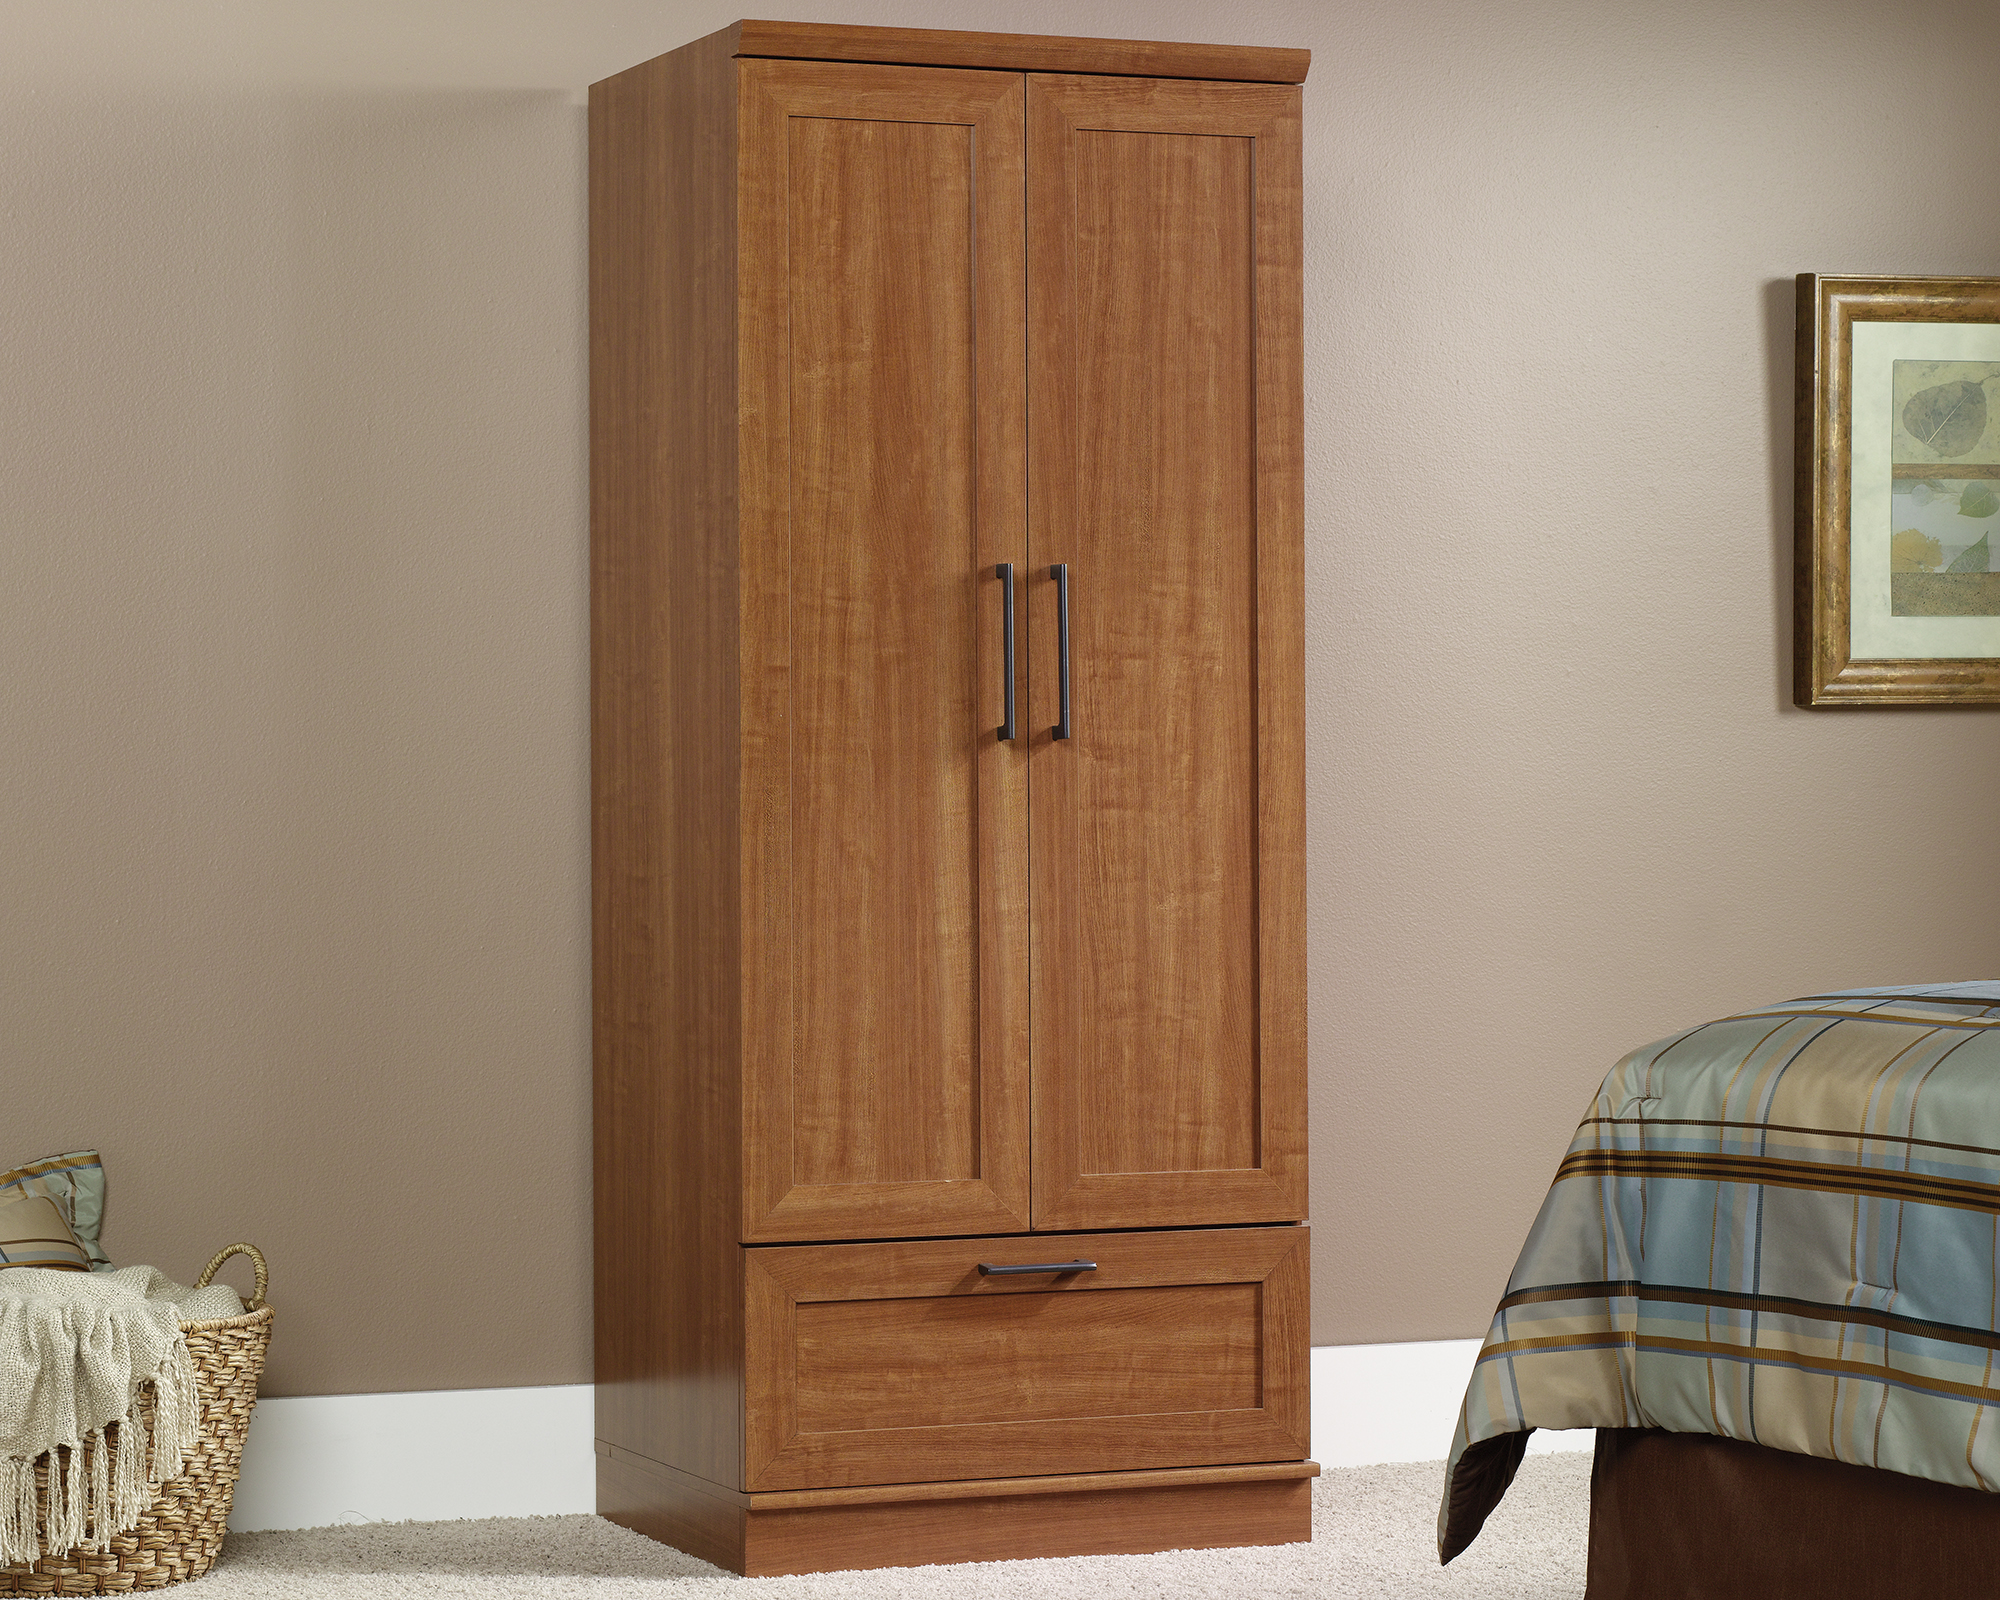 Sauder HomePlus Wardrobe/Storage Cabinet, Sienna Oak® finish (# 411802)